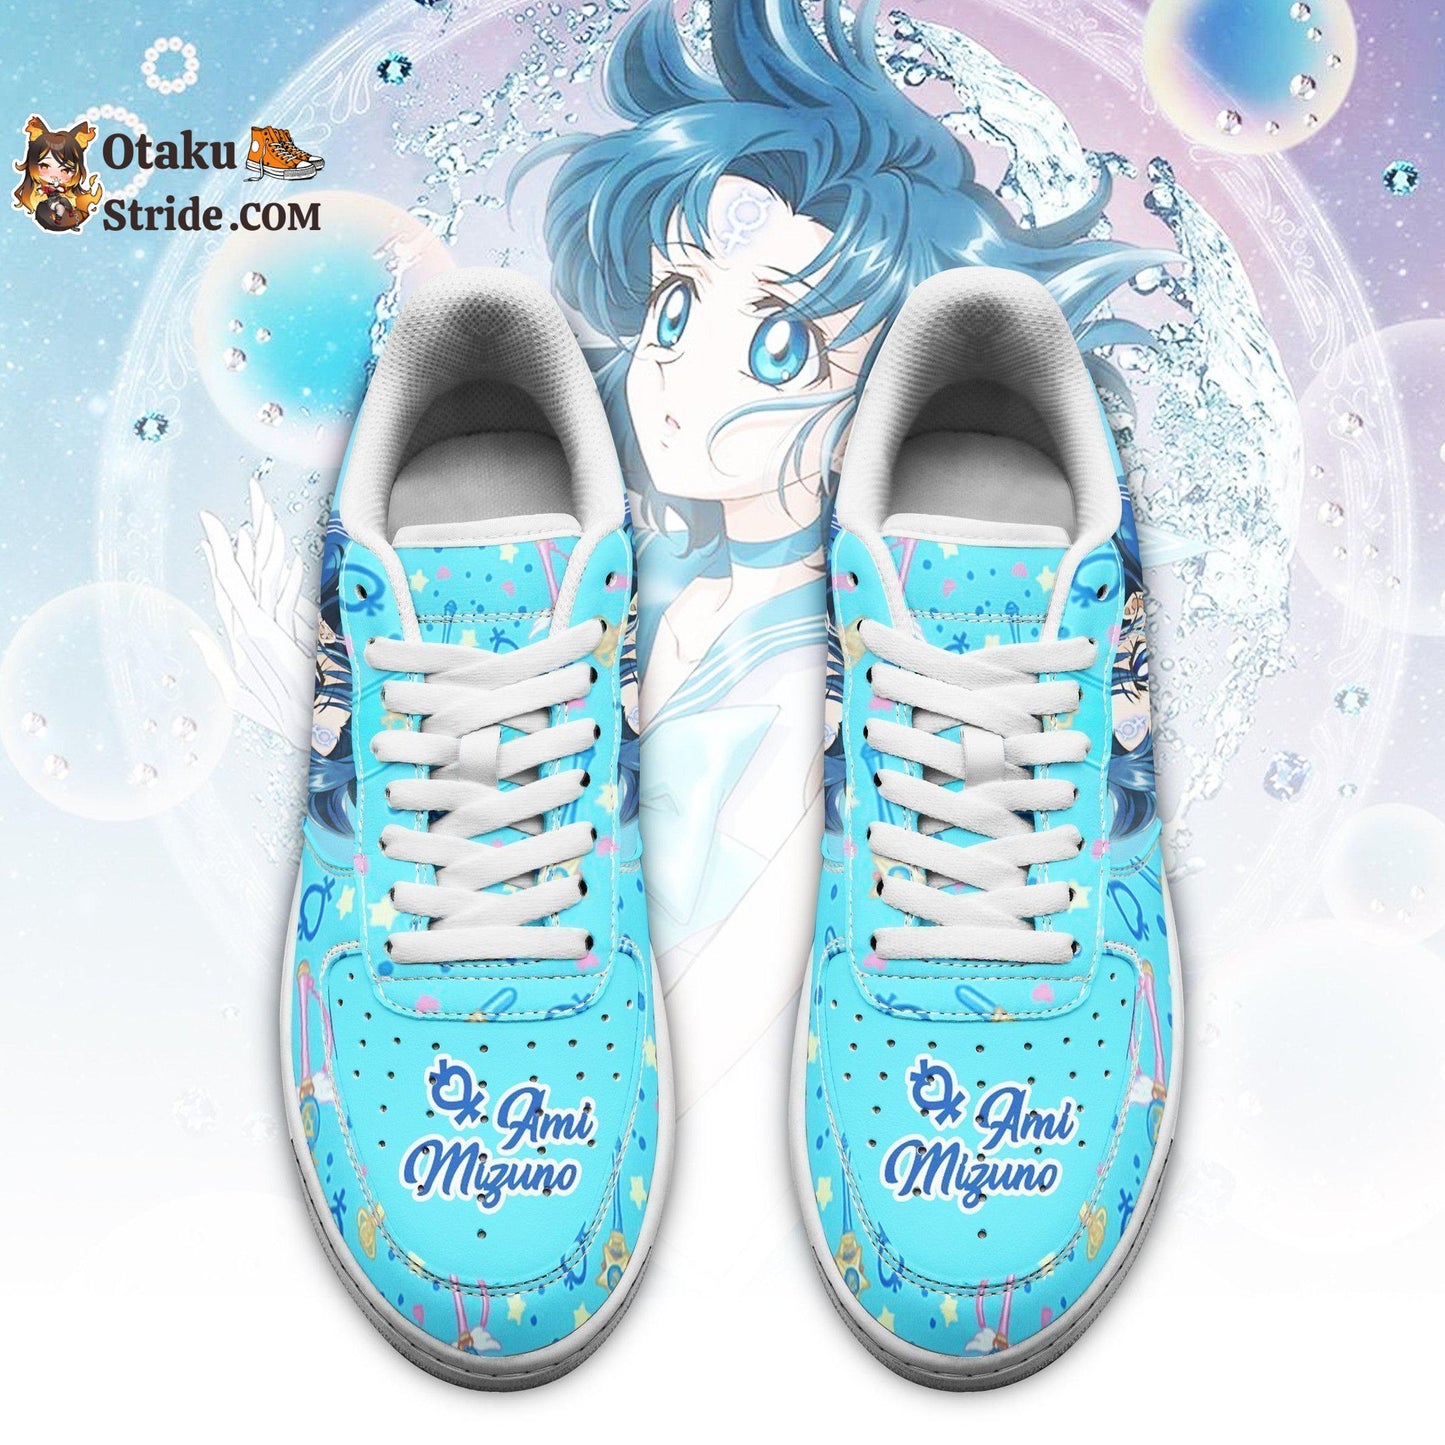 Sailor Mercury Air Sneakers